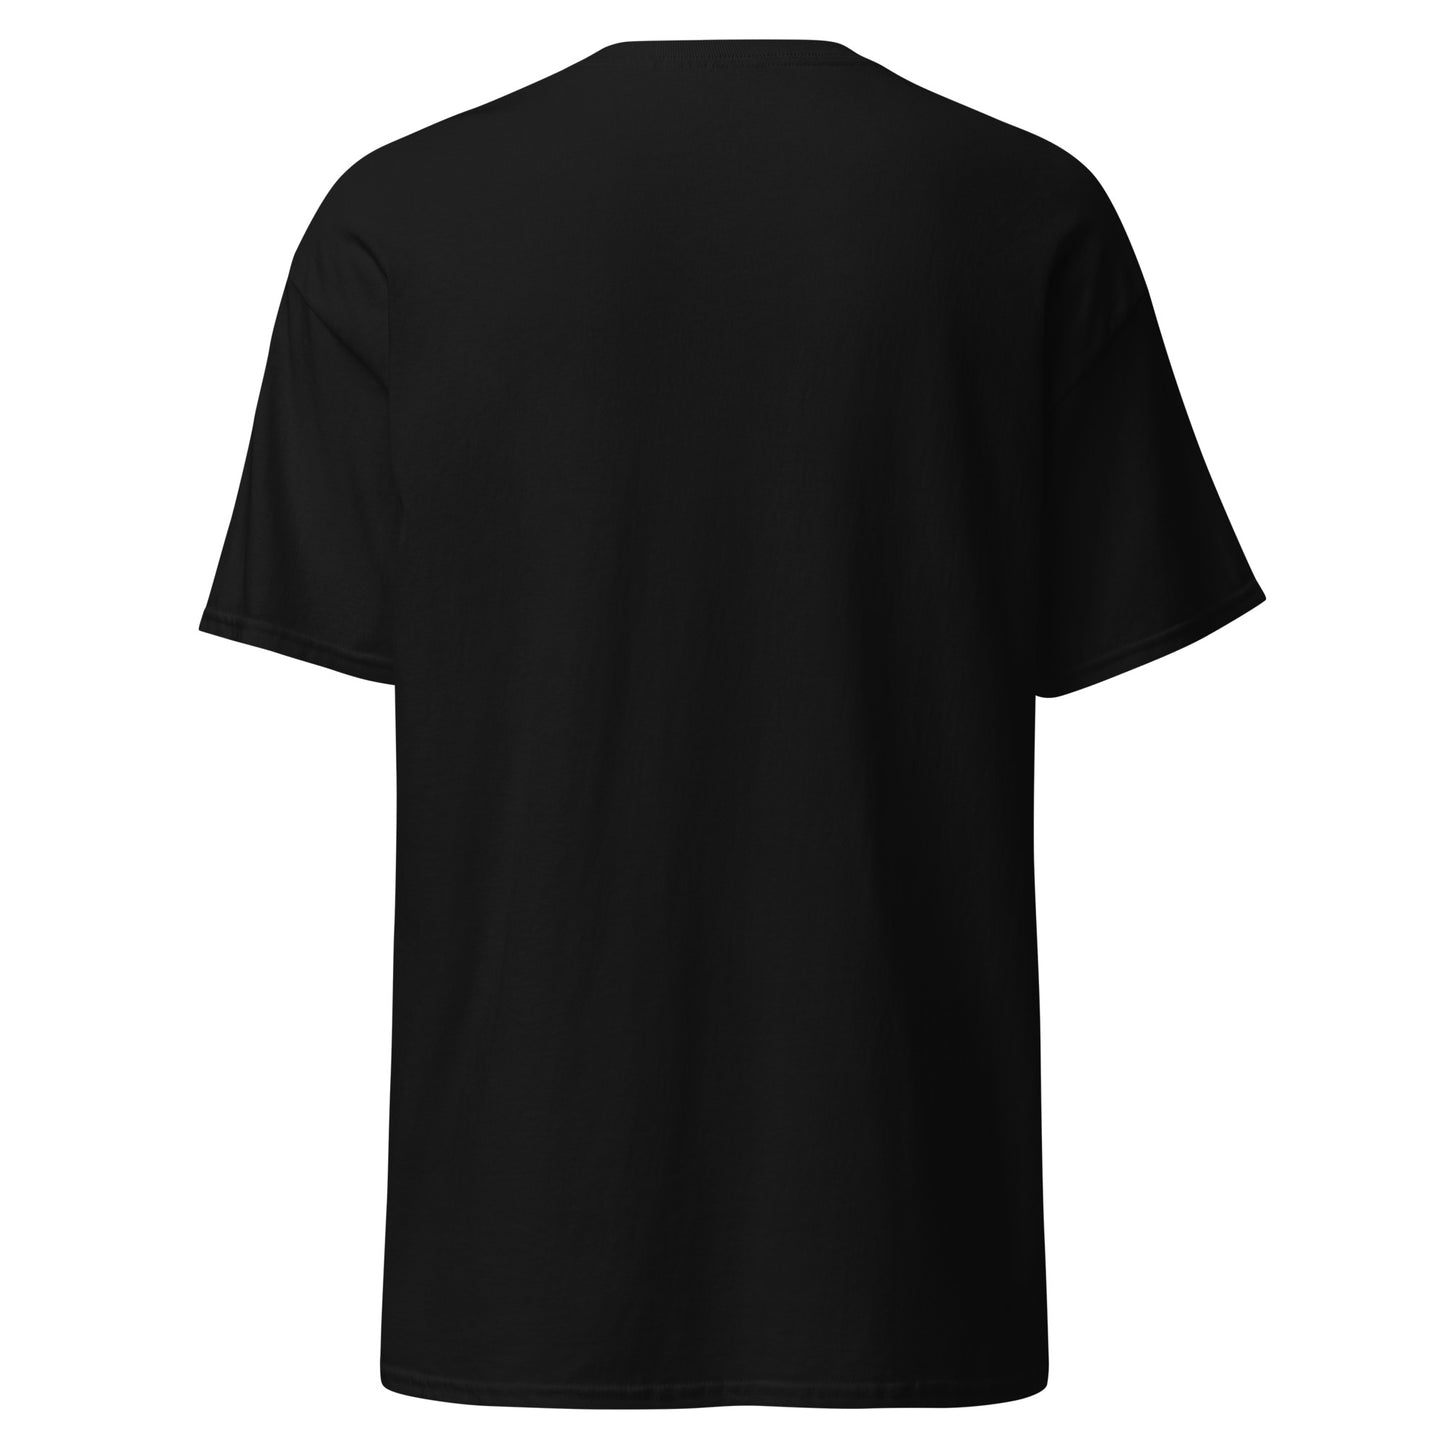 Unisex Short Sleeve shirt - Pride4Us 2.0